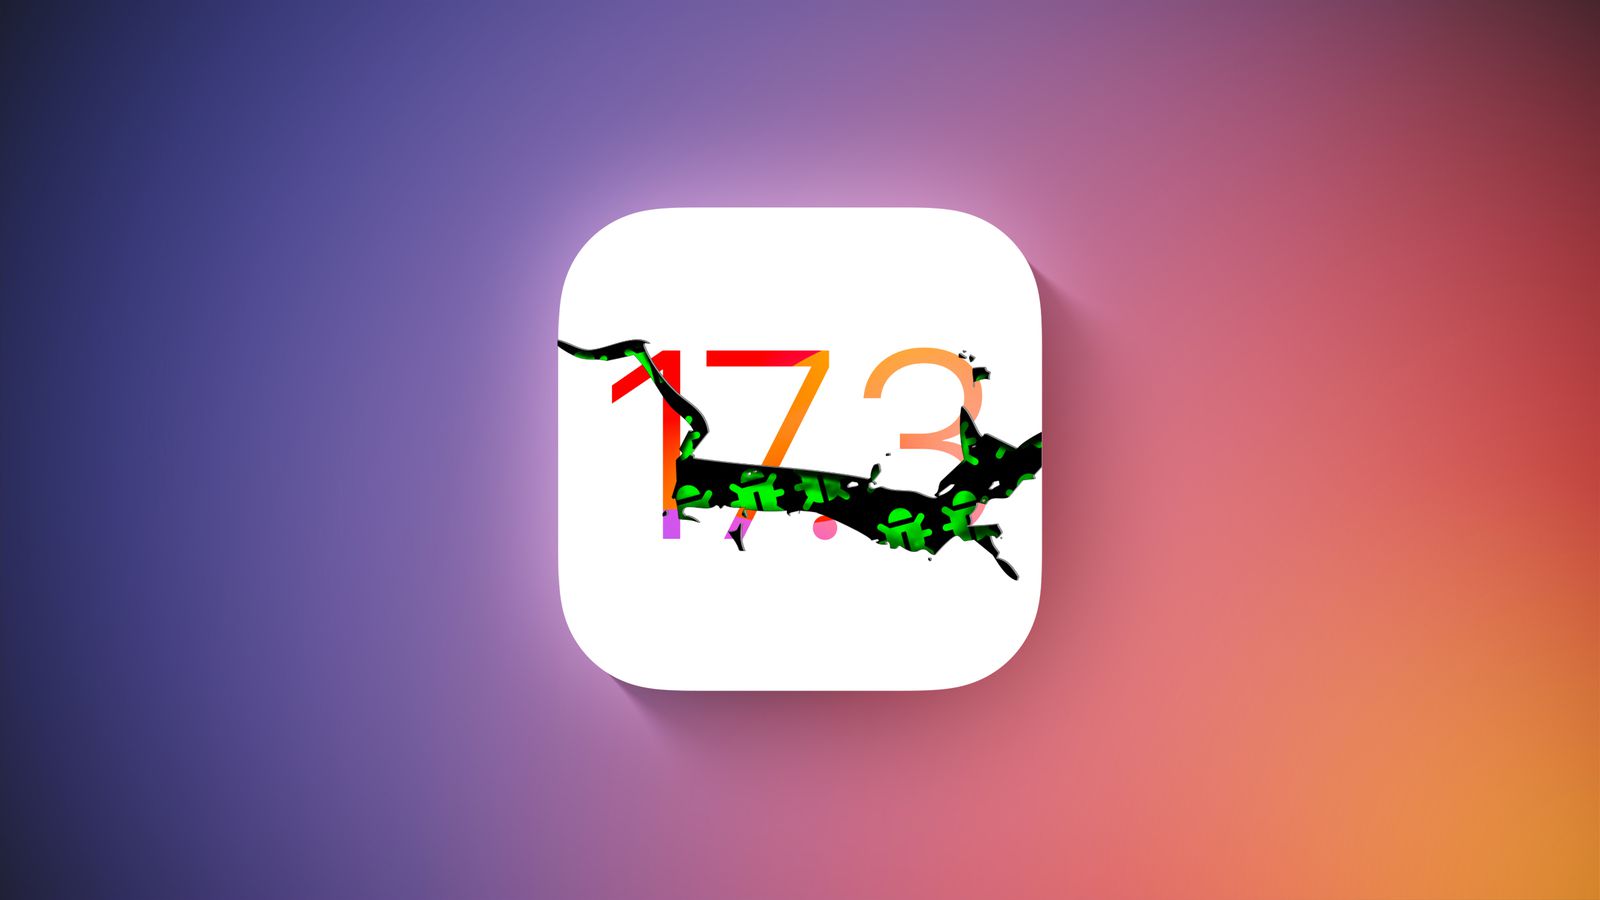 Apple wydało iOS 17.3 Beta 2, ale kilka godzin później wycofało aktualizację z powodu poważnego błędu